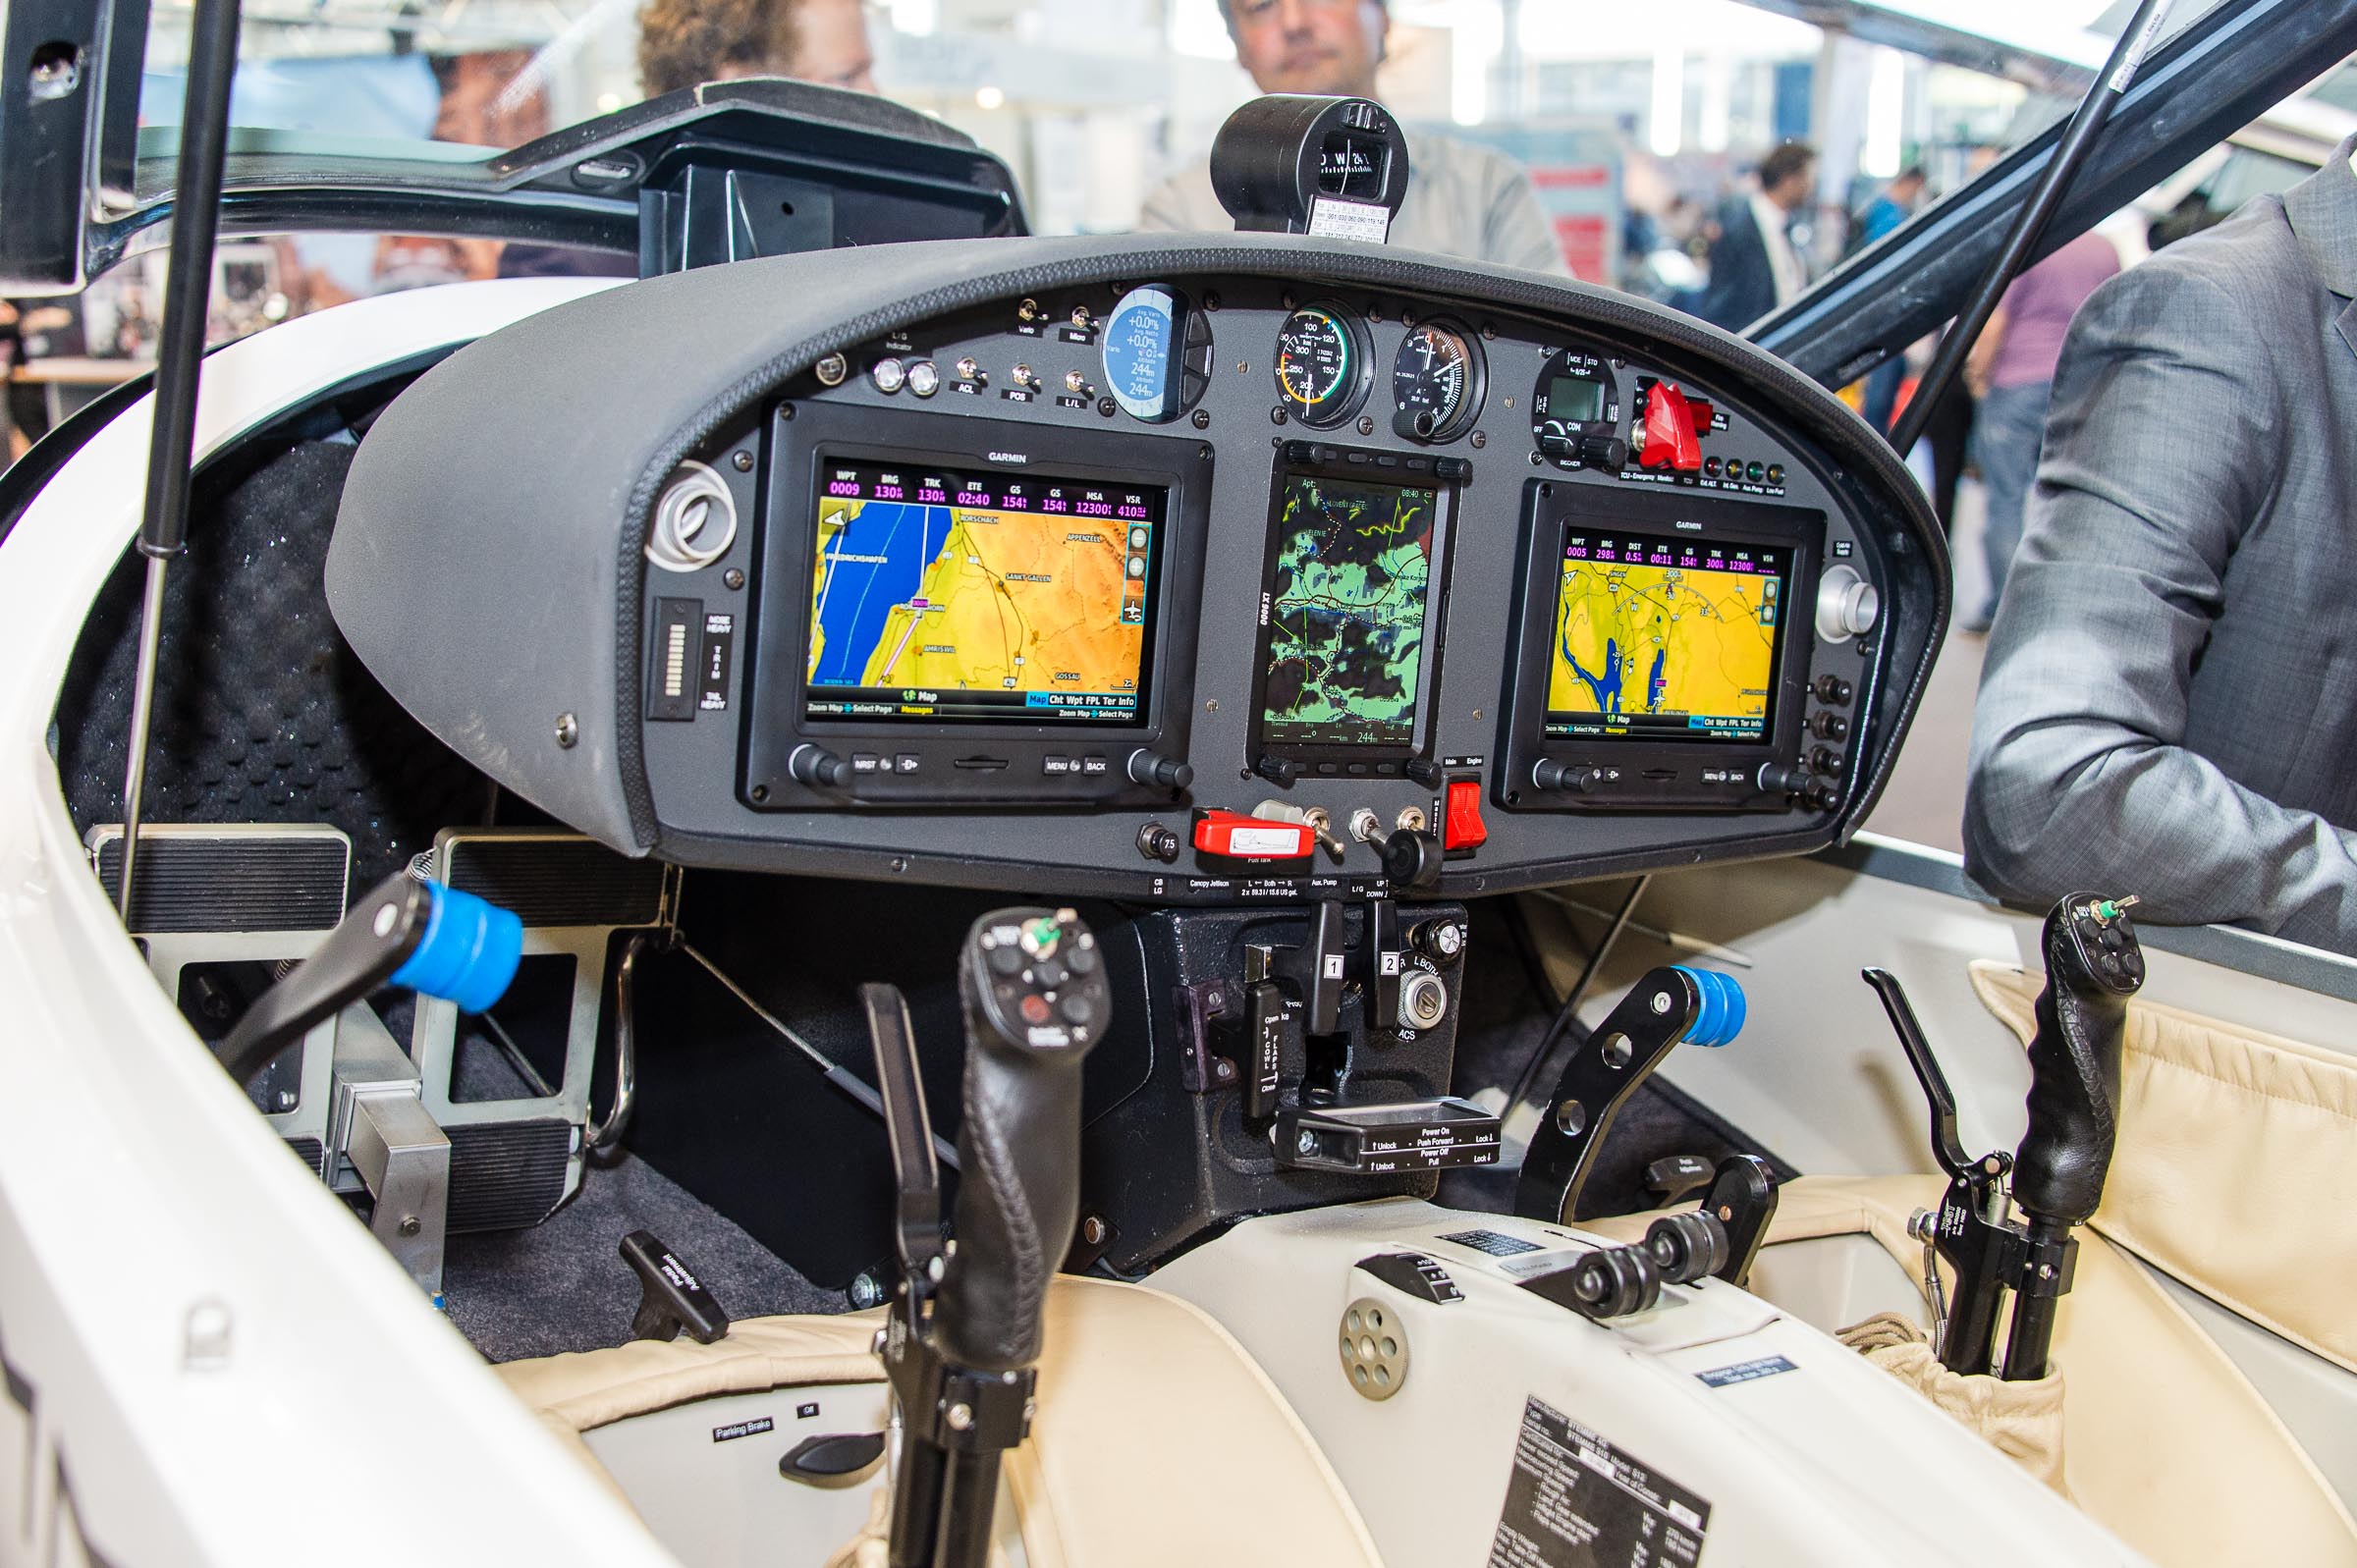 rødme se Bonde Stemme updates S12 cockpit with Garmin G3X : : FLYER